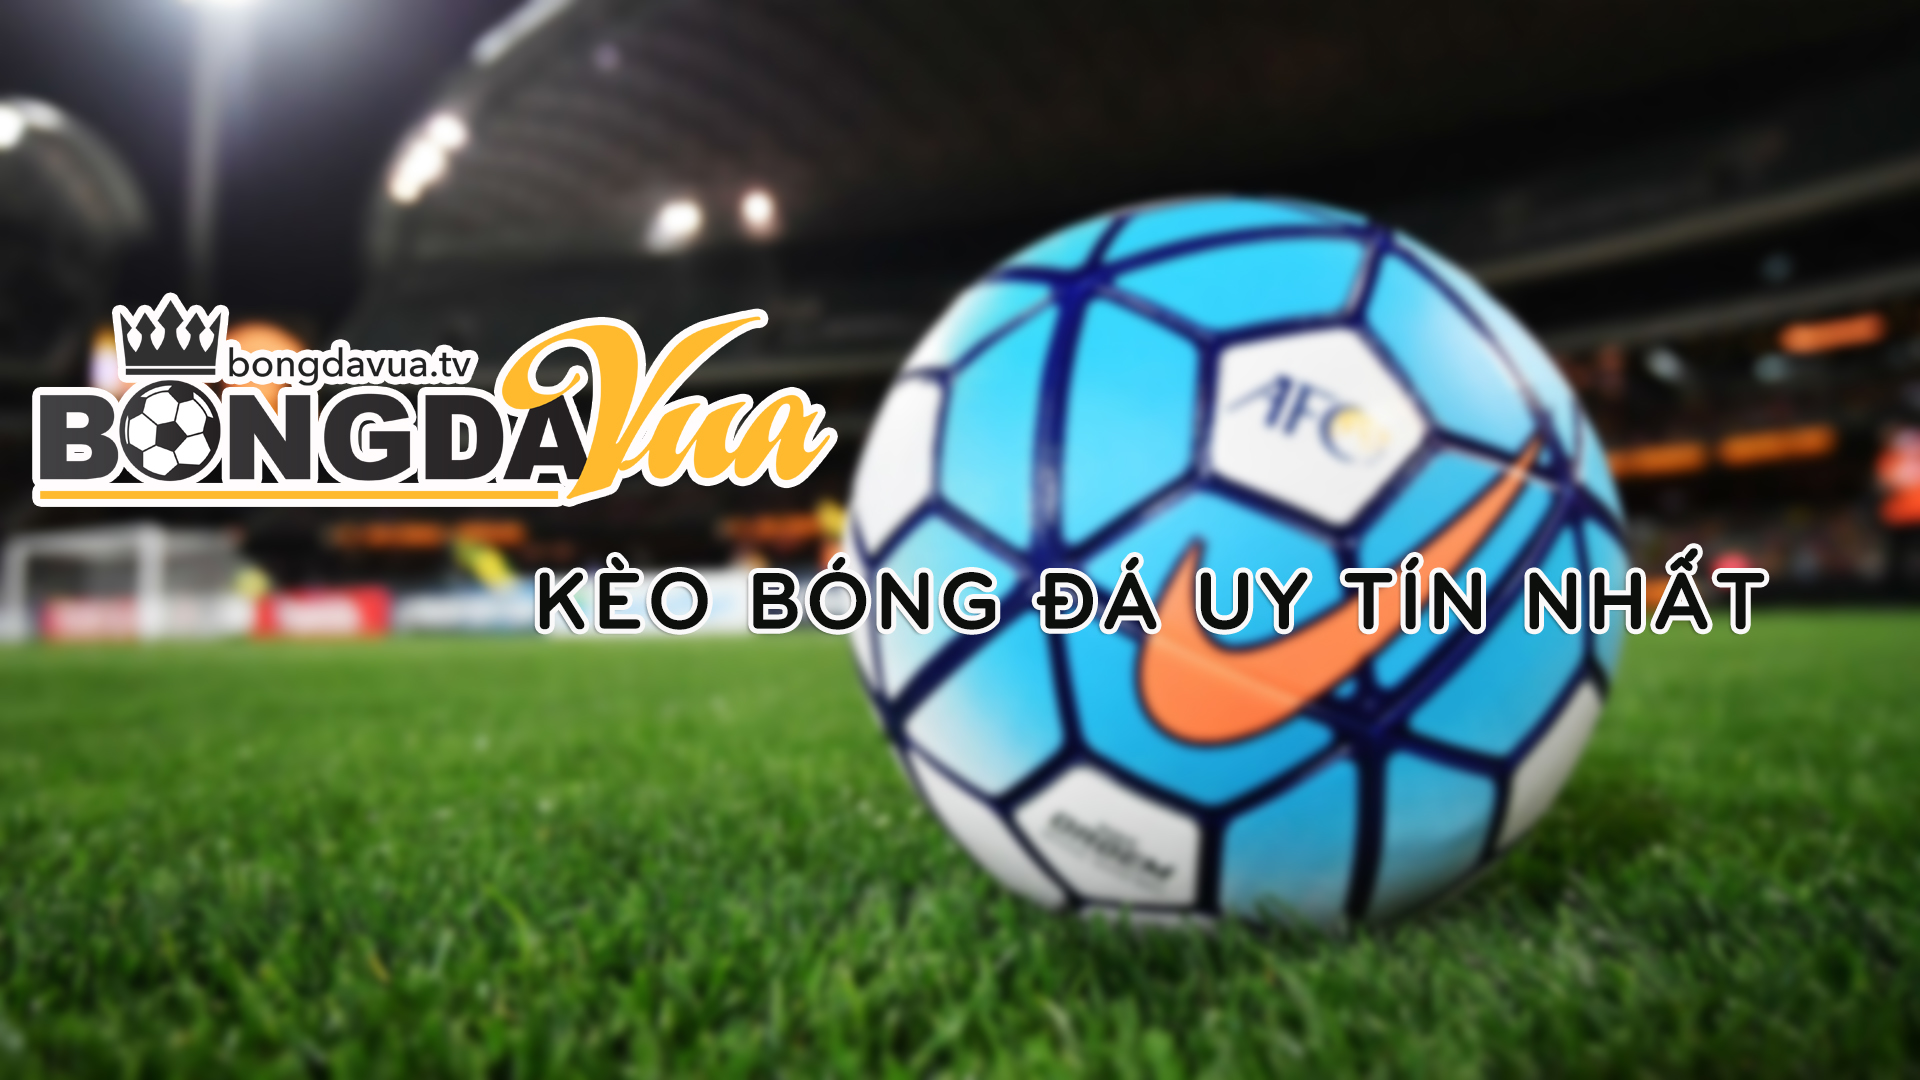 Trang cập nhật kèo bóng đá nhanh và mới nhất - Bongdavua.TV